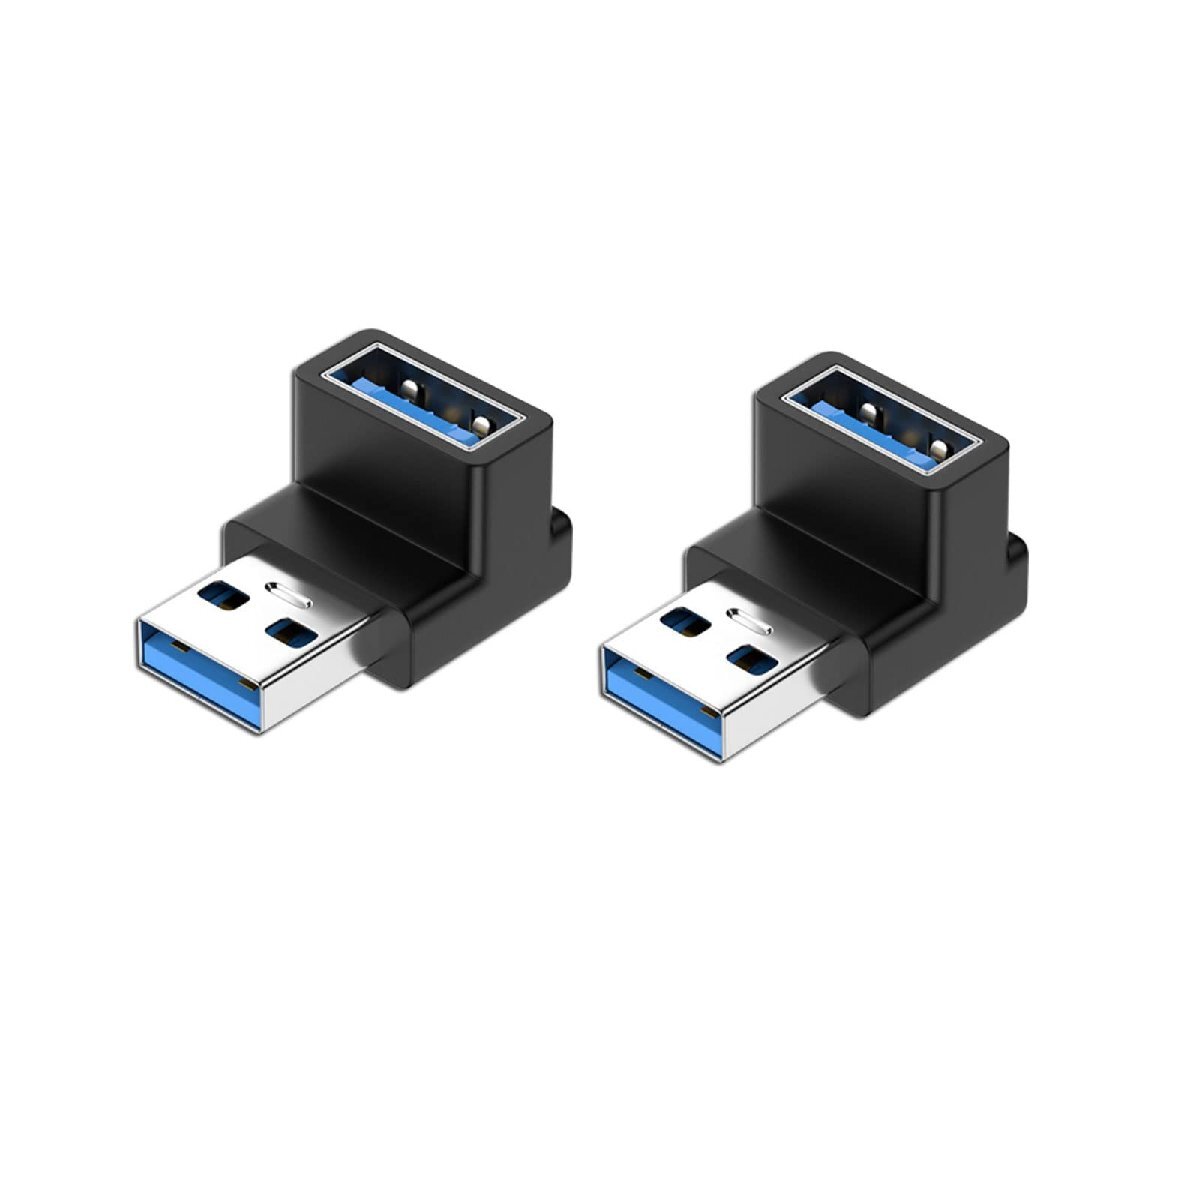 YFFSFDC USB 3.0 アダプタ L型 アダプタ 2個セット USB 直角変換 USB Type A L字型変換アダプタ 小型 軽量 タイプ_画像1